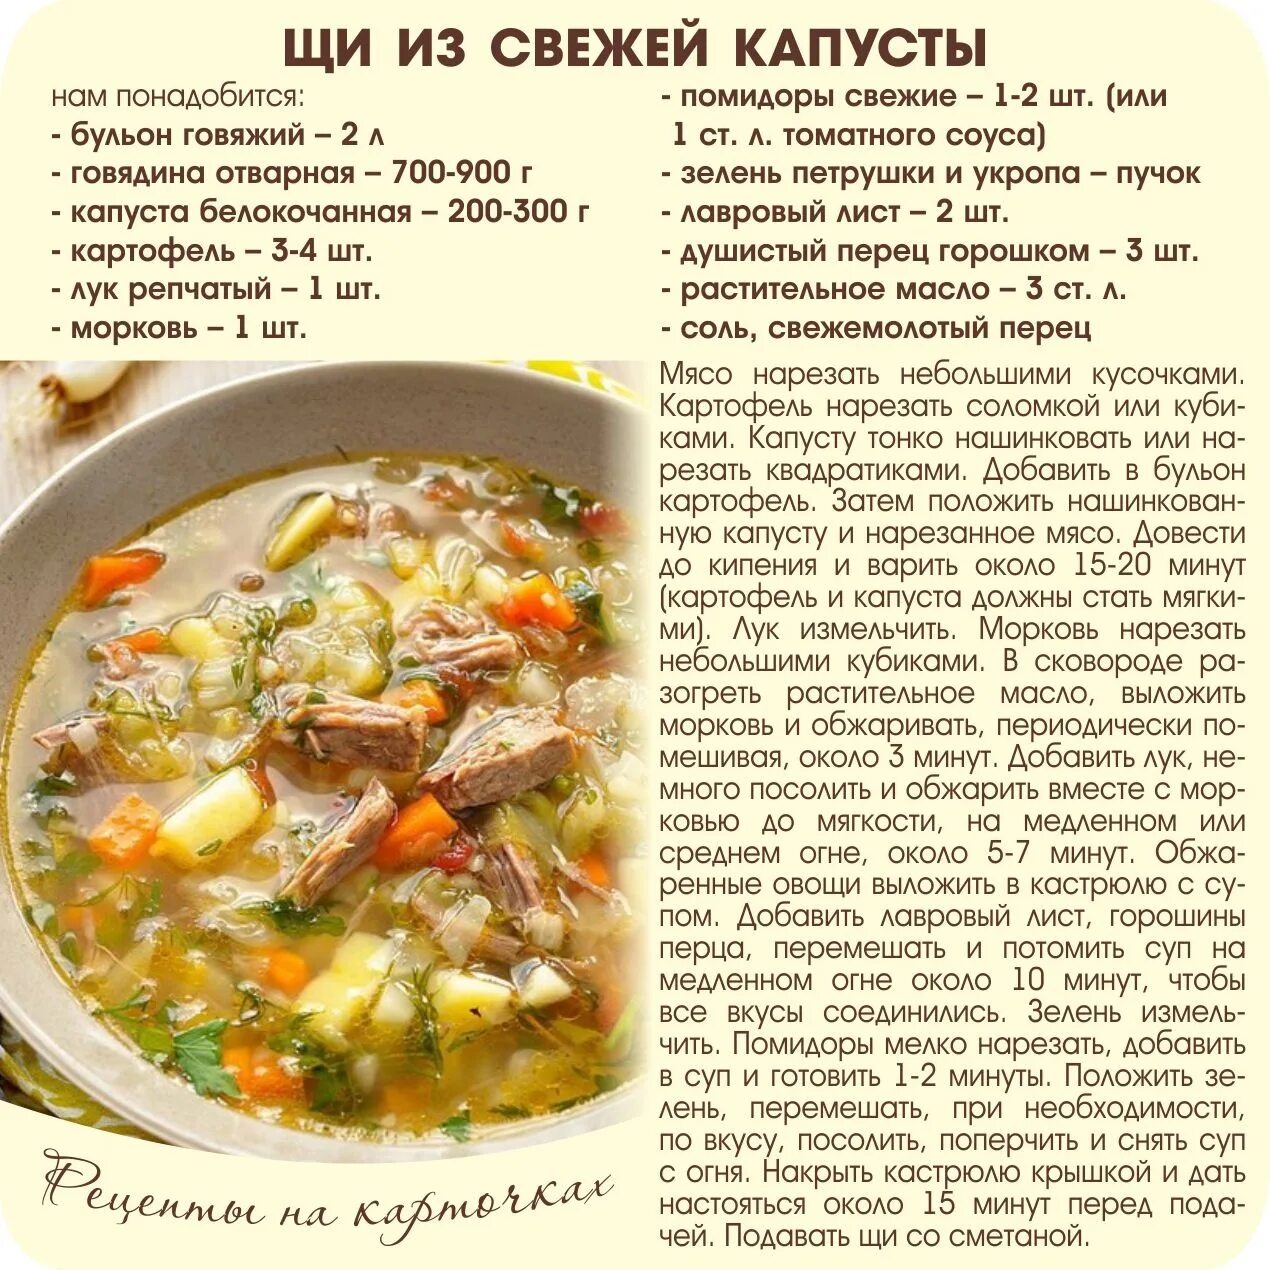 Сколько варится квашеная. Рецепты блюд в картинках с описанием. Рецепт свежих щей. Рецепты на карточках. Рецепт приготовления супа.